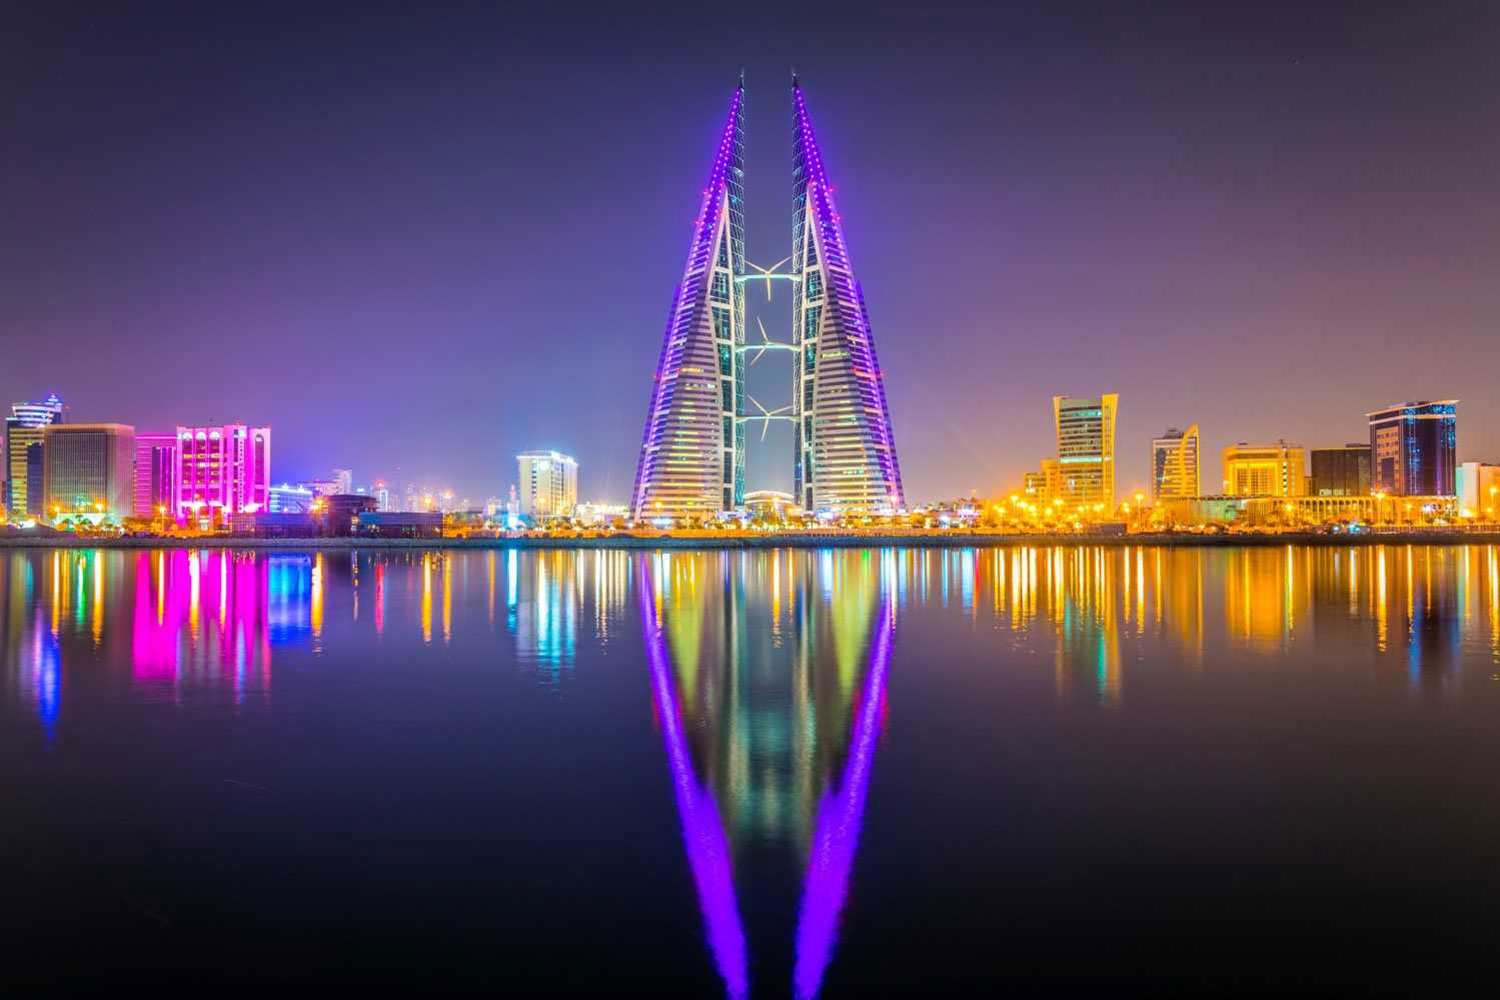 manama bahrain travel guide